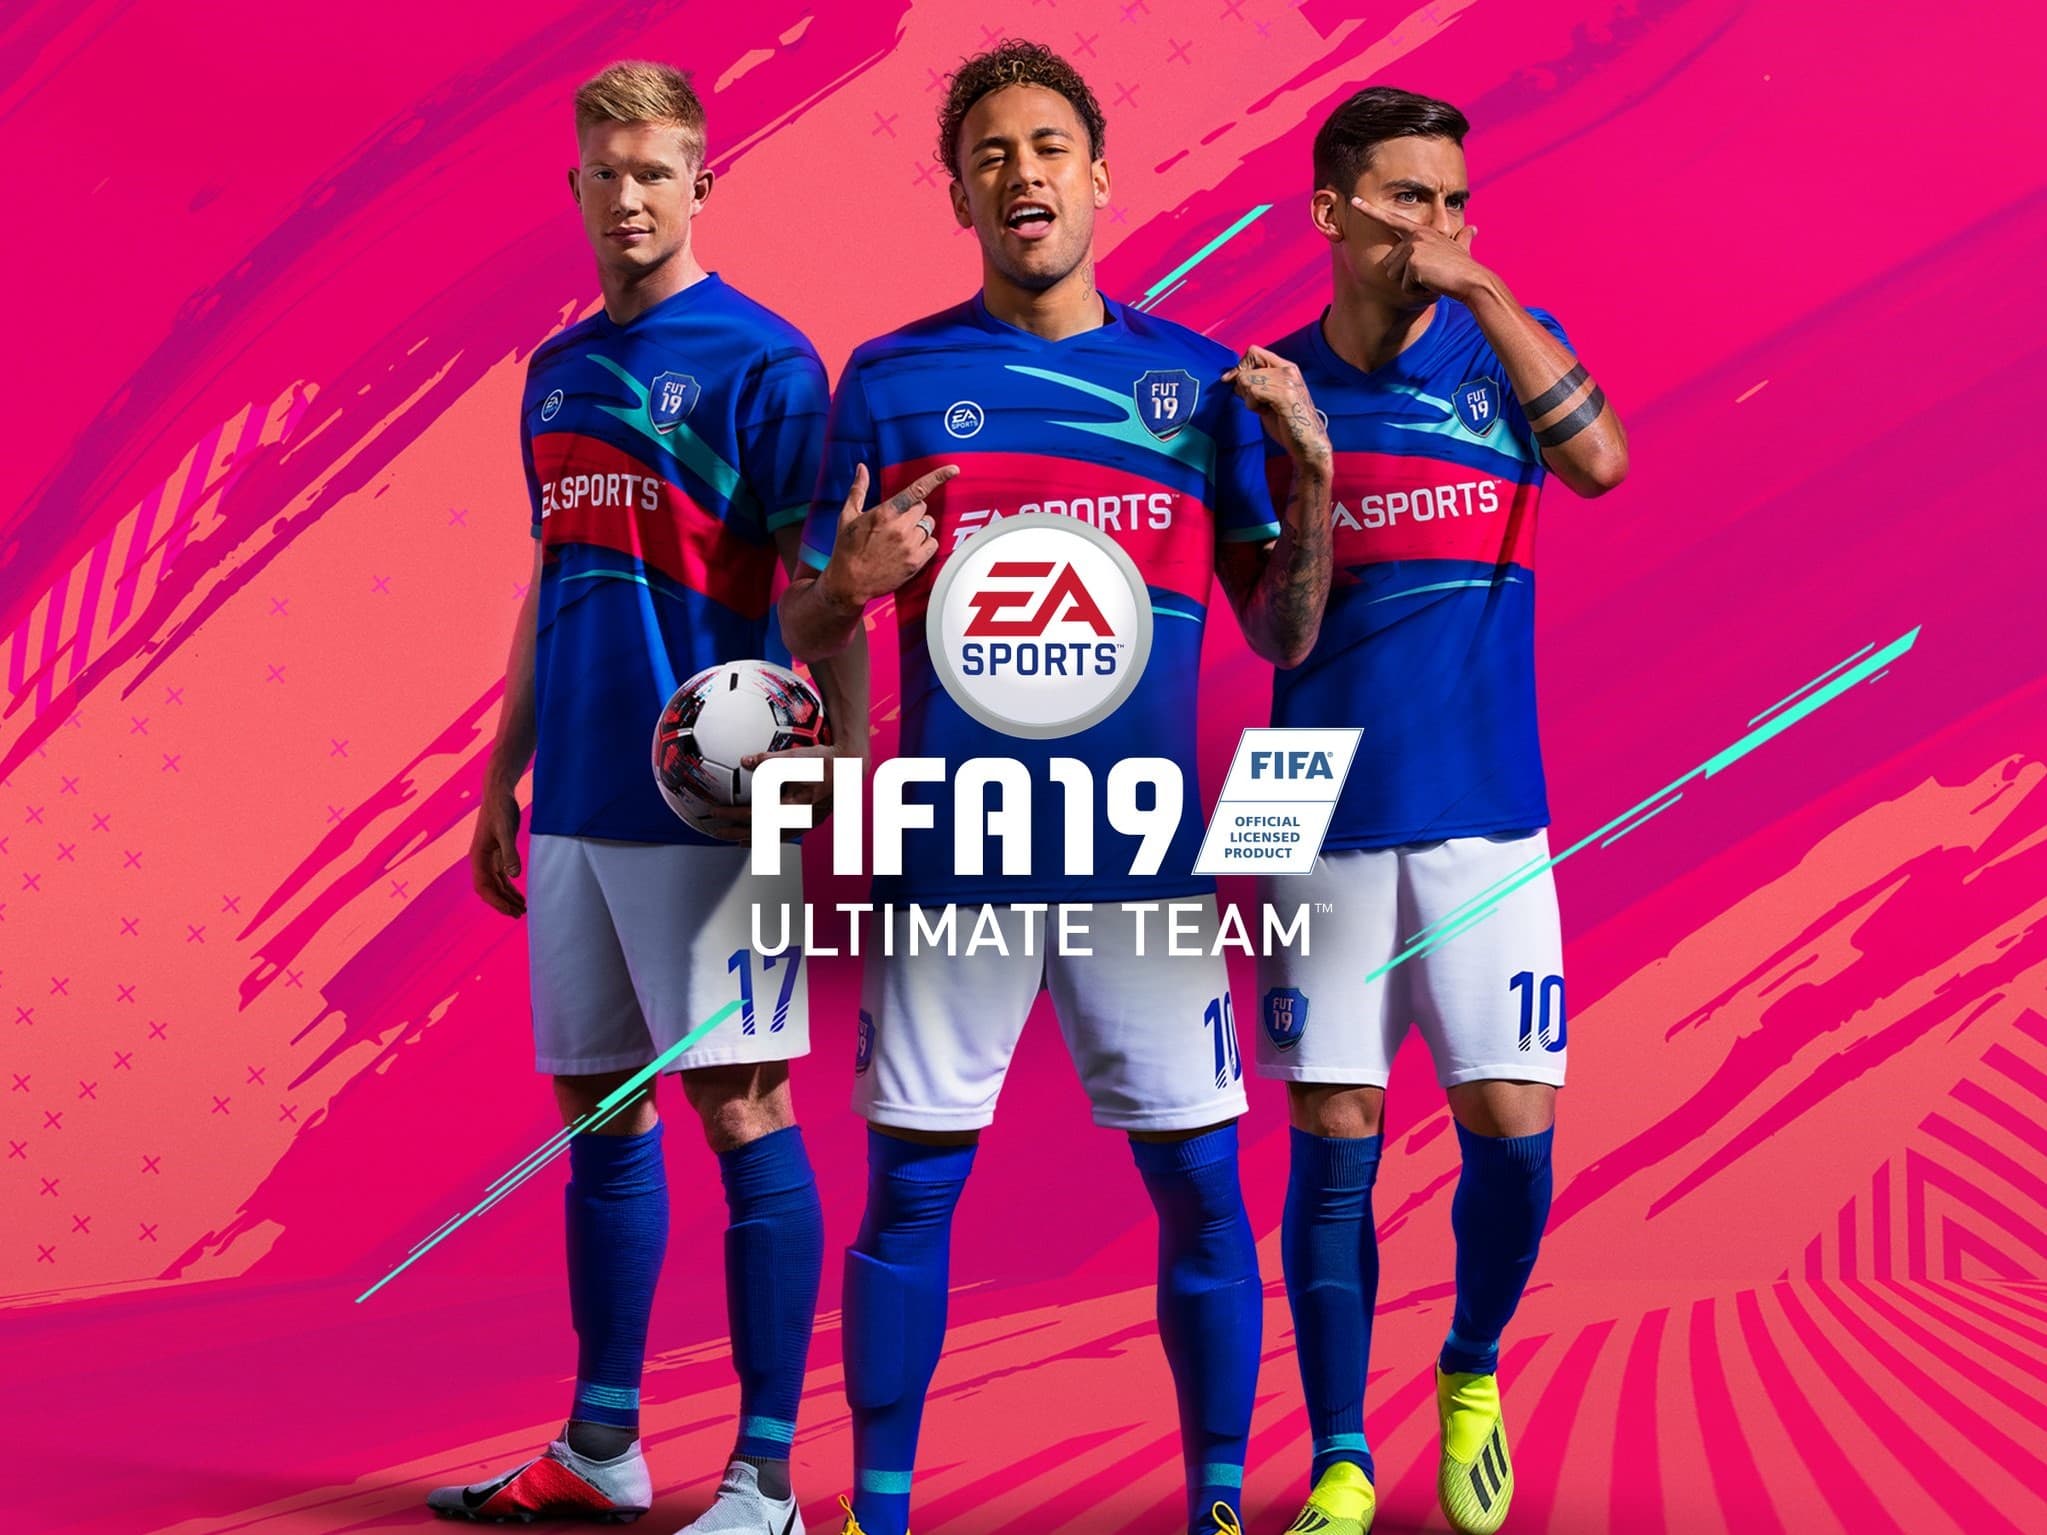 FIFA 19 Ultimate Team : le guide ultime pour gagner des crédits